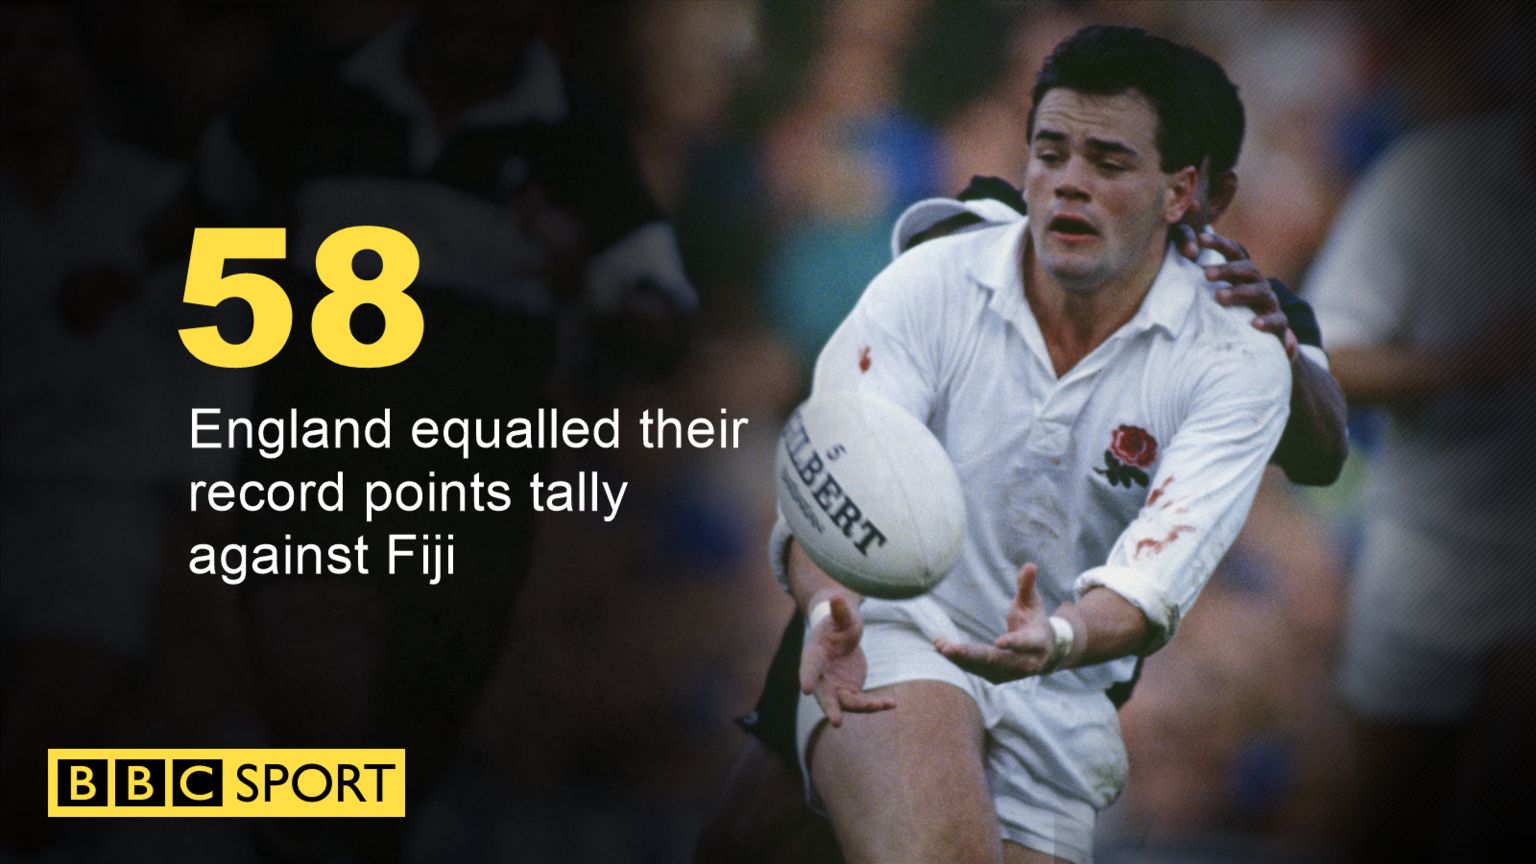 England beat Fiji